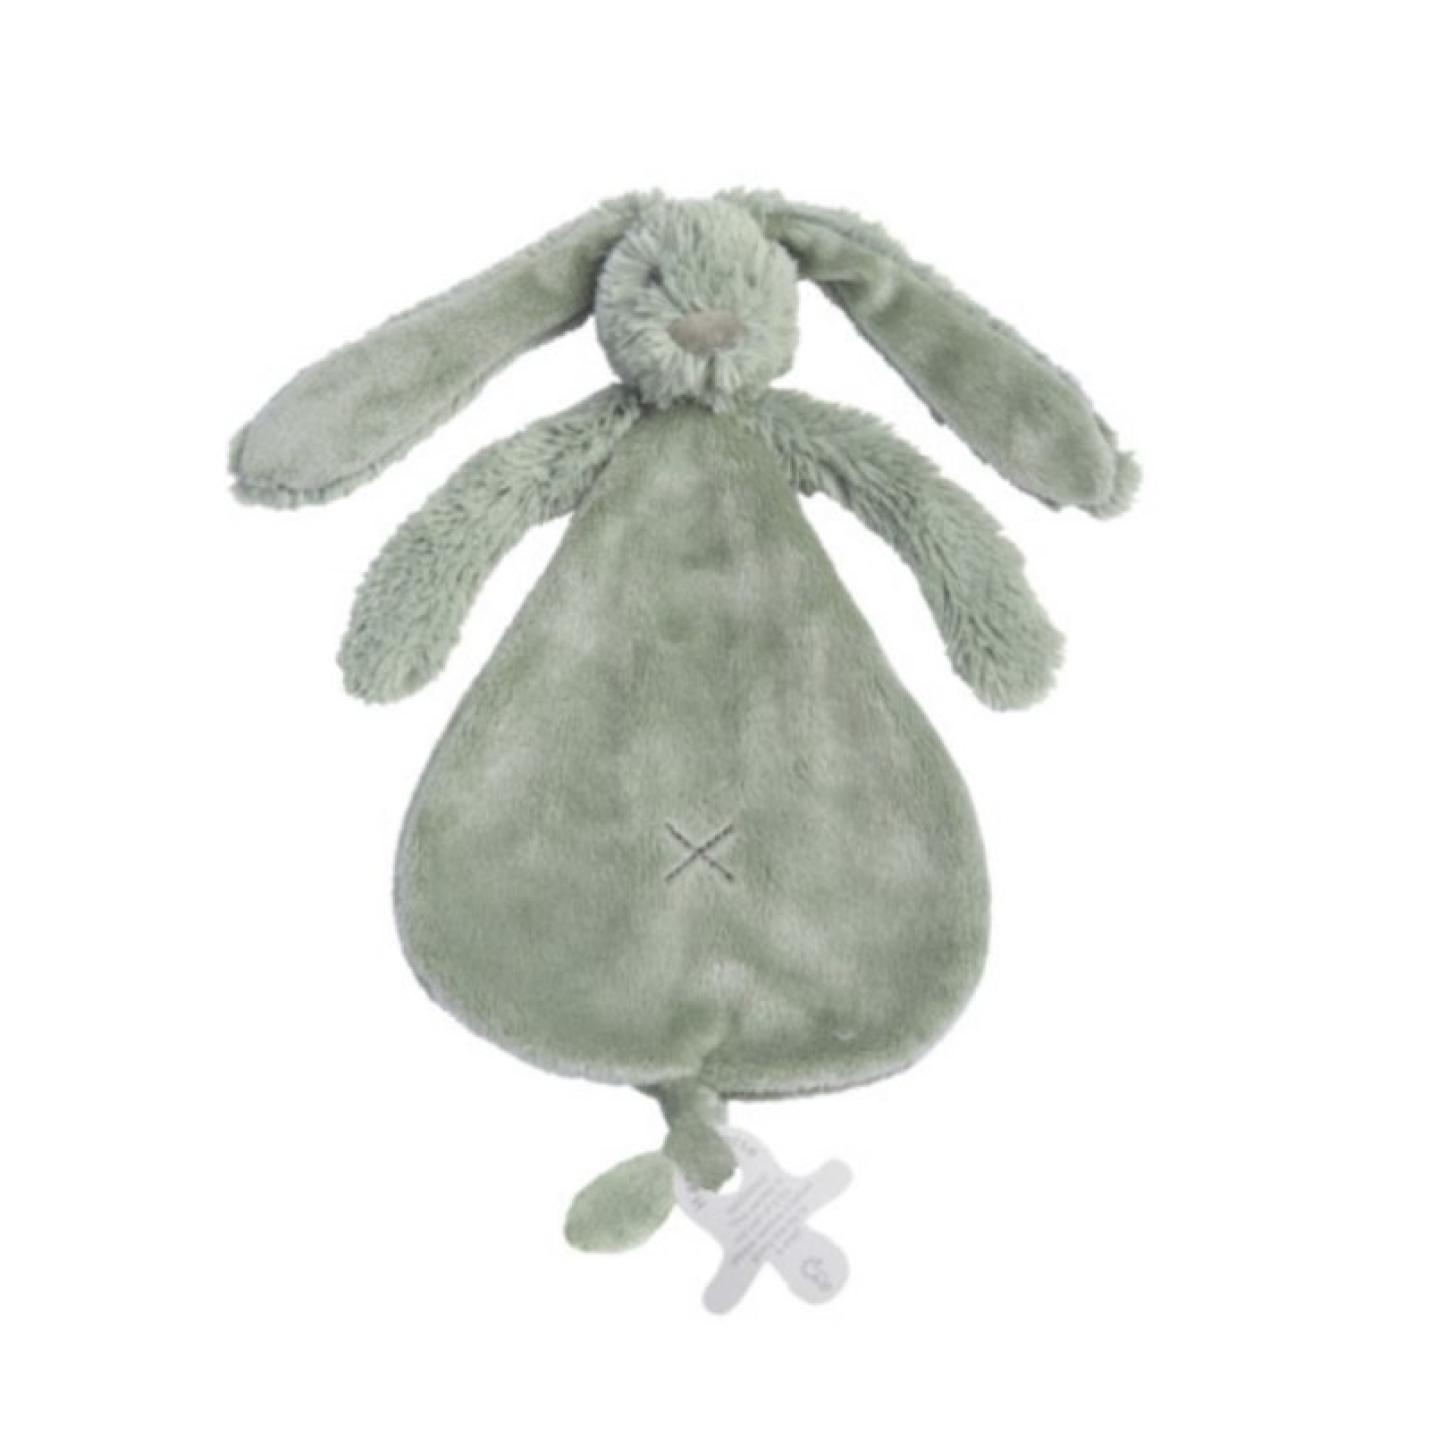 Knuffeldoekje Rabbit Riche Green is een stoffenf plat goed doekje in vorm van peer met konijnkopje erbovenop lange oren en armpjes onder het hoofdje met onderaan lus voor speen